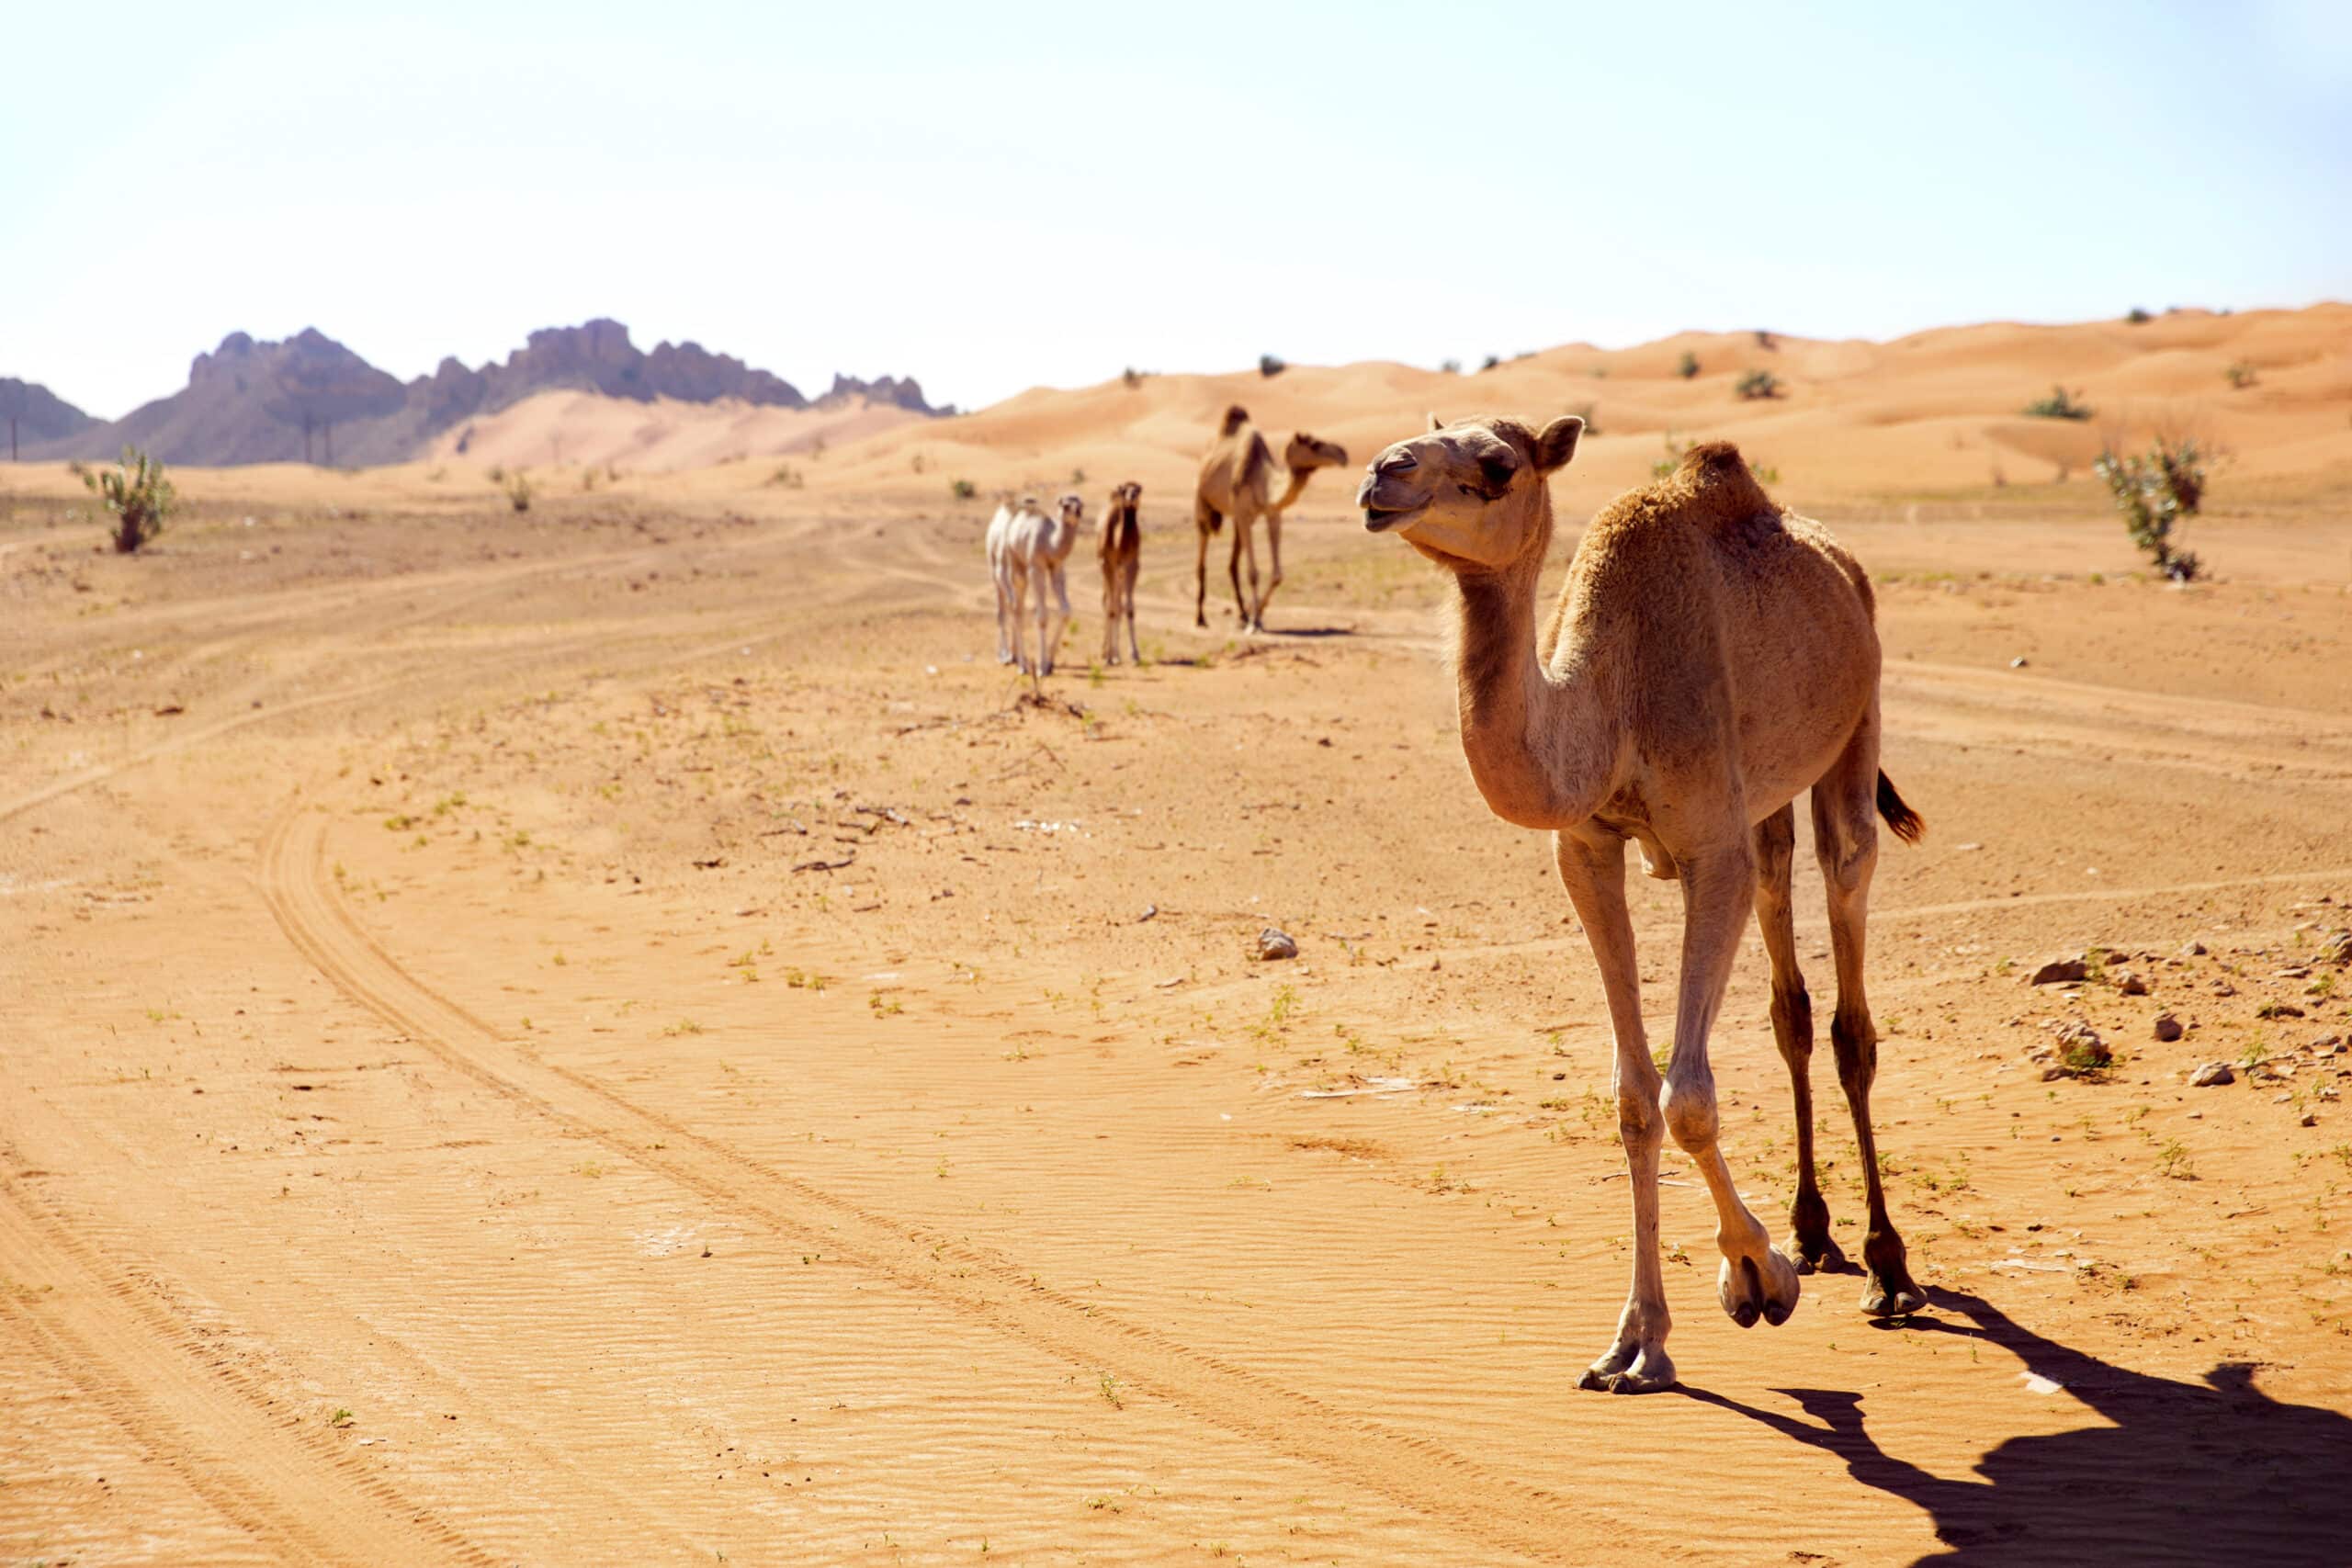 Ein Kamel läuft auf einer Sandstraße in einer Wüstenlandschaft, mit ein paar anderen Kamelen und felsigen Hügeln im Hintergrund unter einem klaren blauen Himmel. © Fotografie Tomas Rodriguez